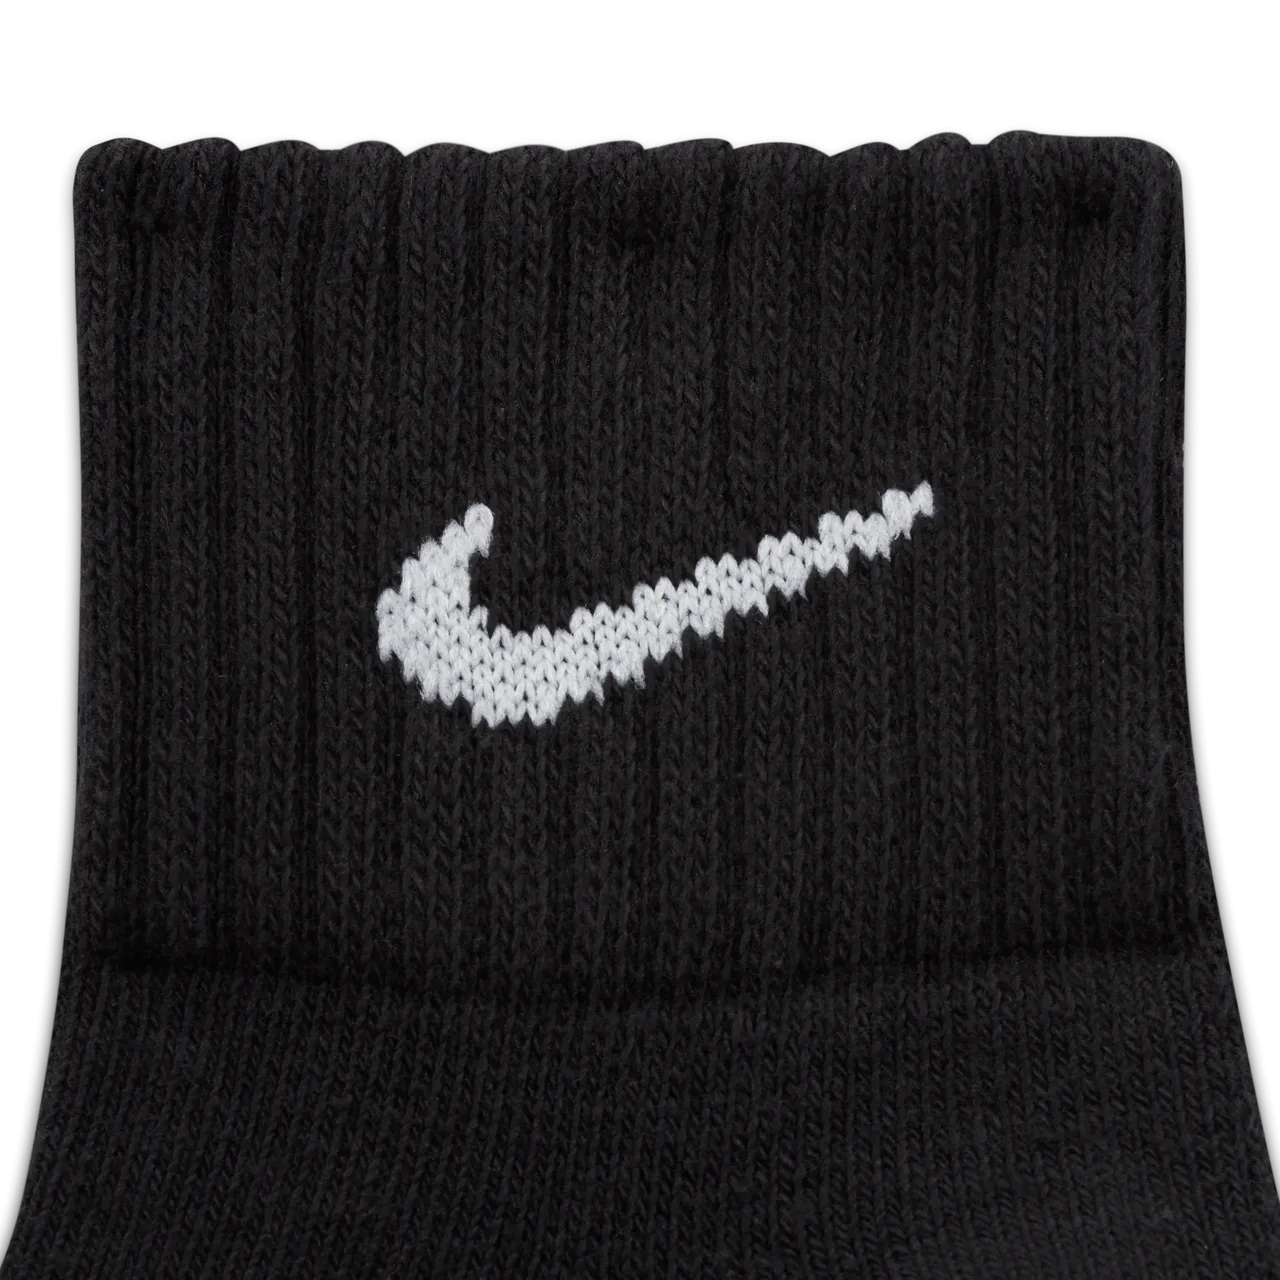 Nike Enkelsokken met demping (3 paar) - Zwart